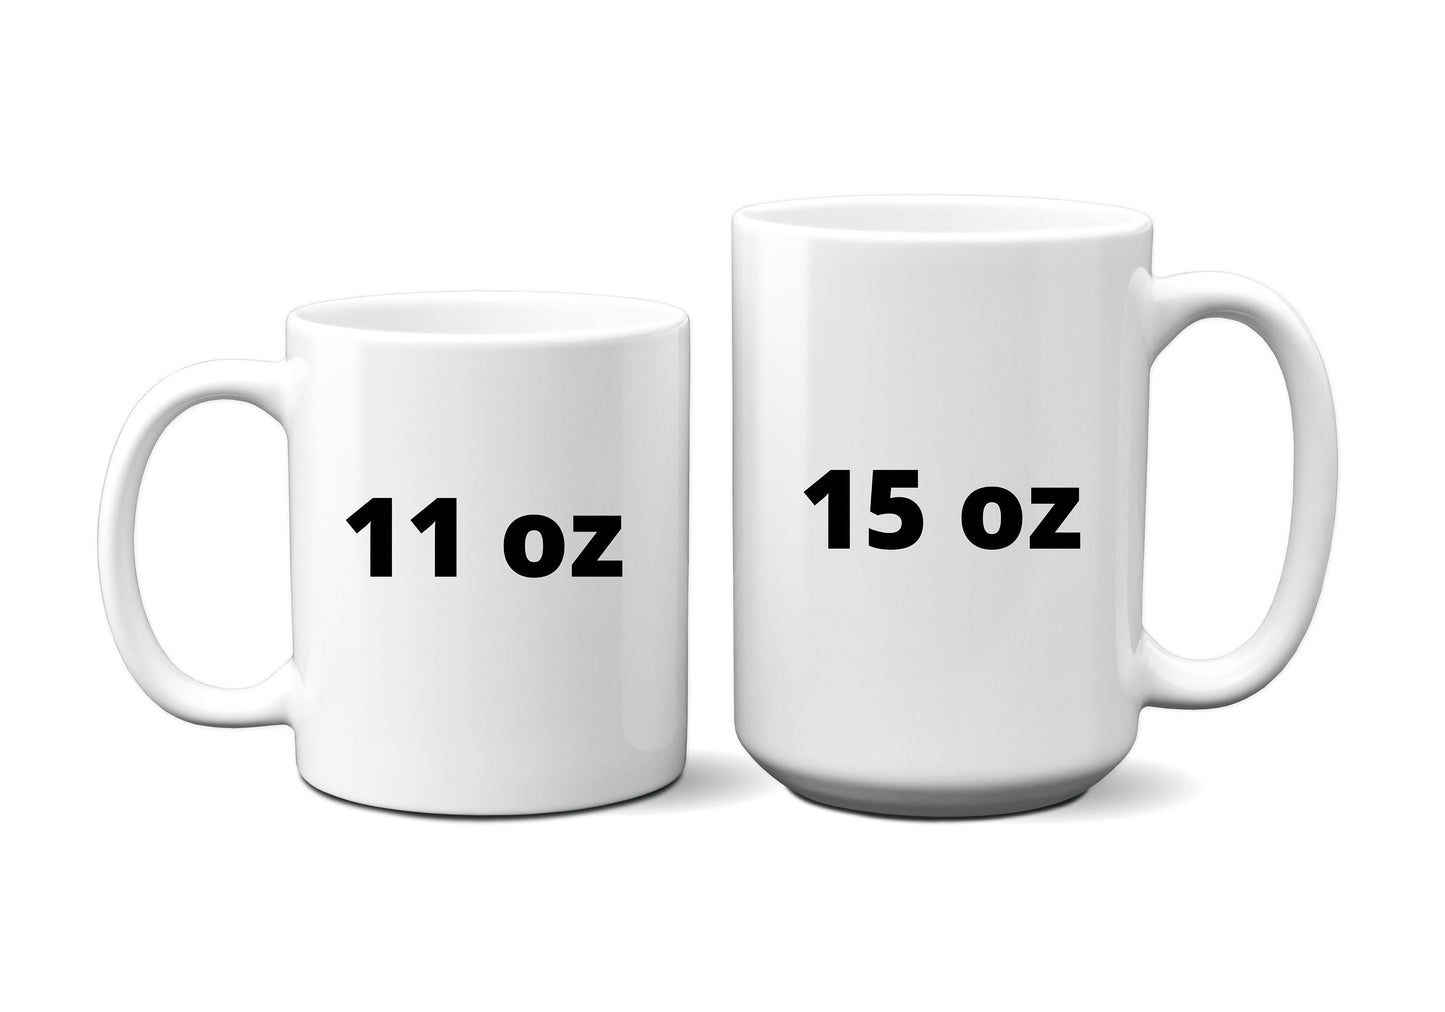 Wake up and smell the coffee | Mrs. Doubtfire | Mrs. Doubtfire Mug